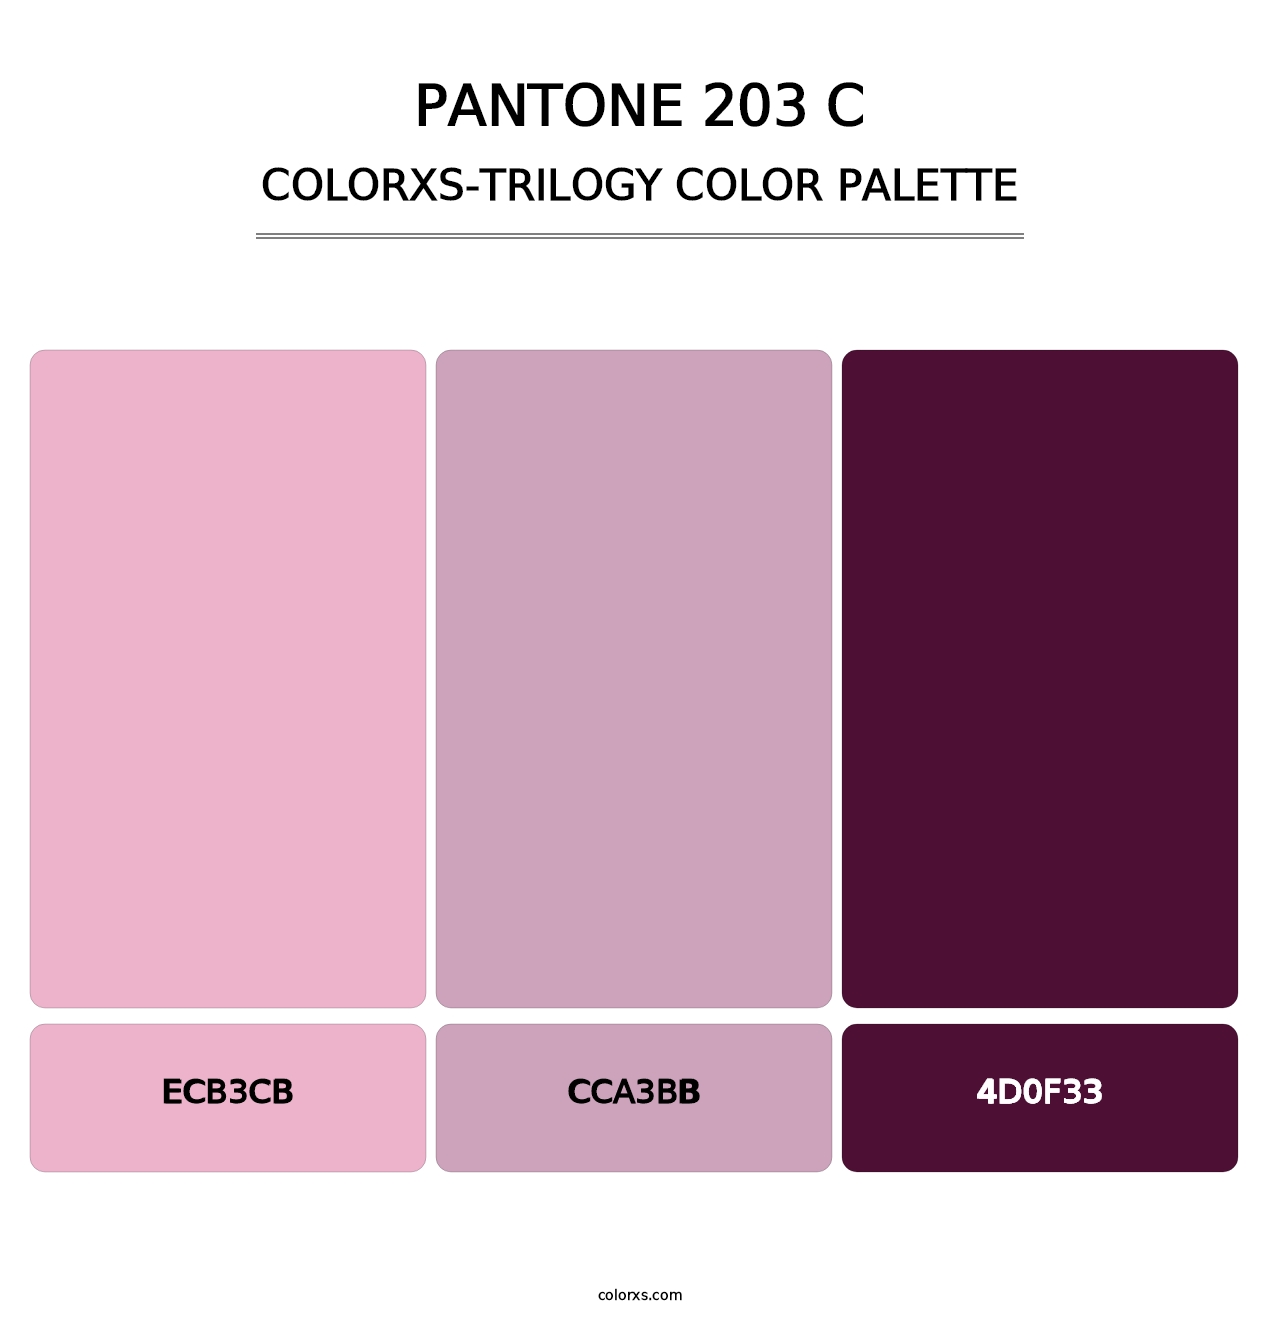 PANTONE 203 C - Colorxs Trilogy Palette